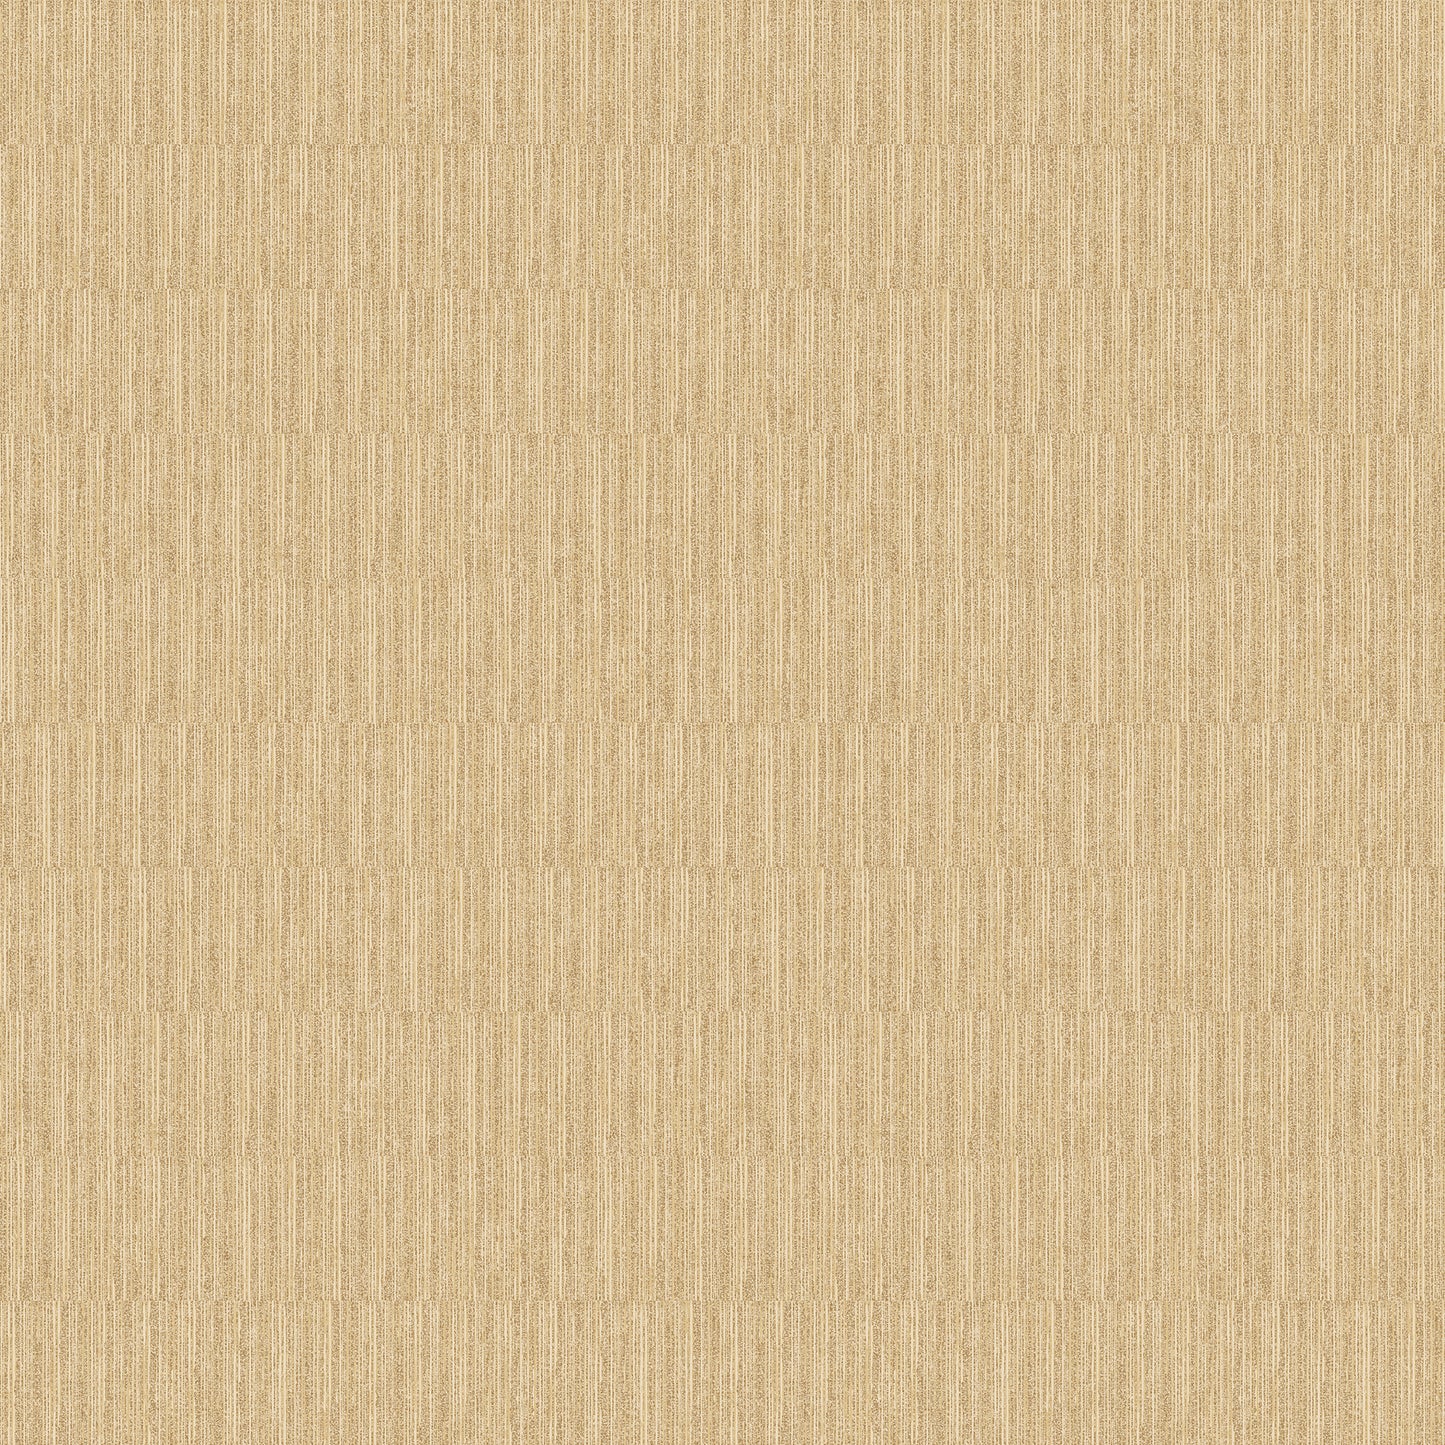 Bamboo Plain Gold-Ocher